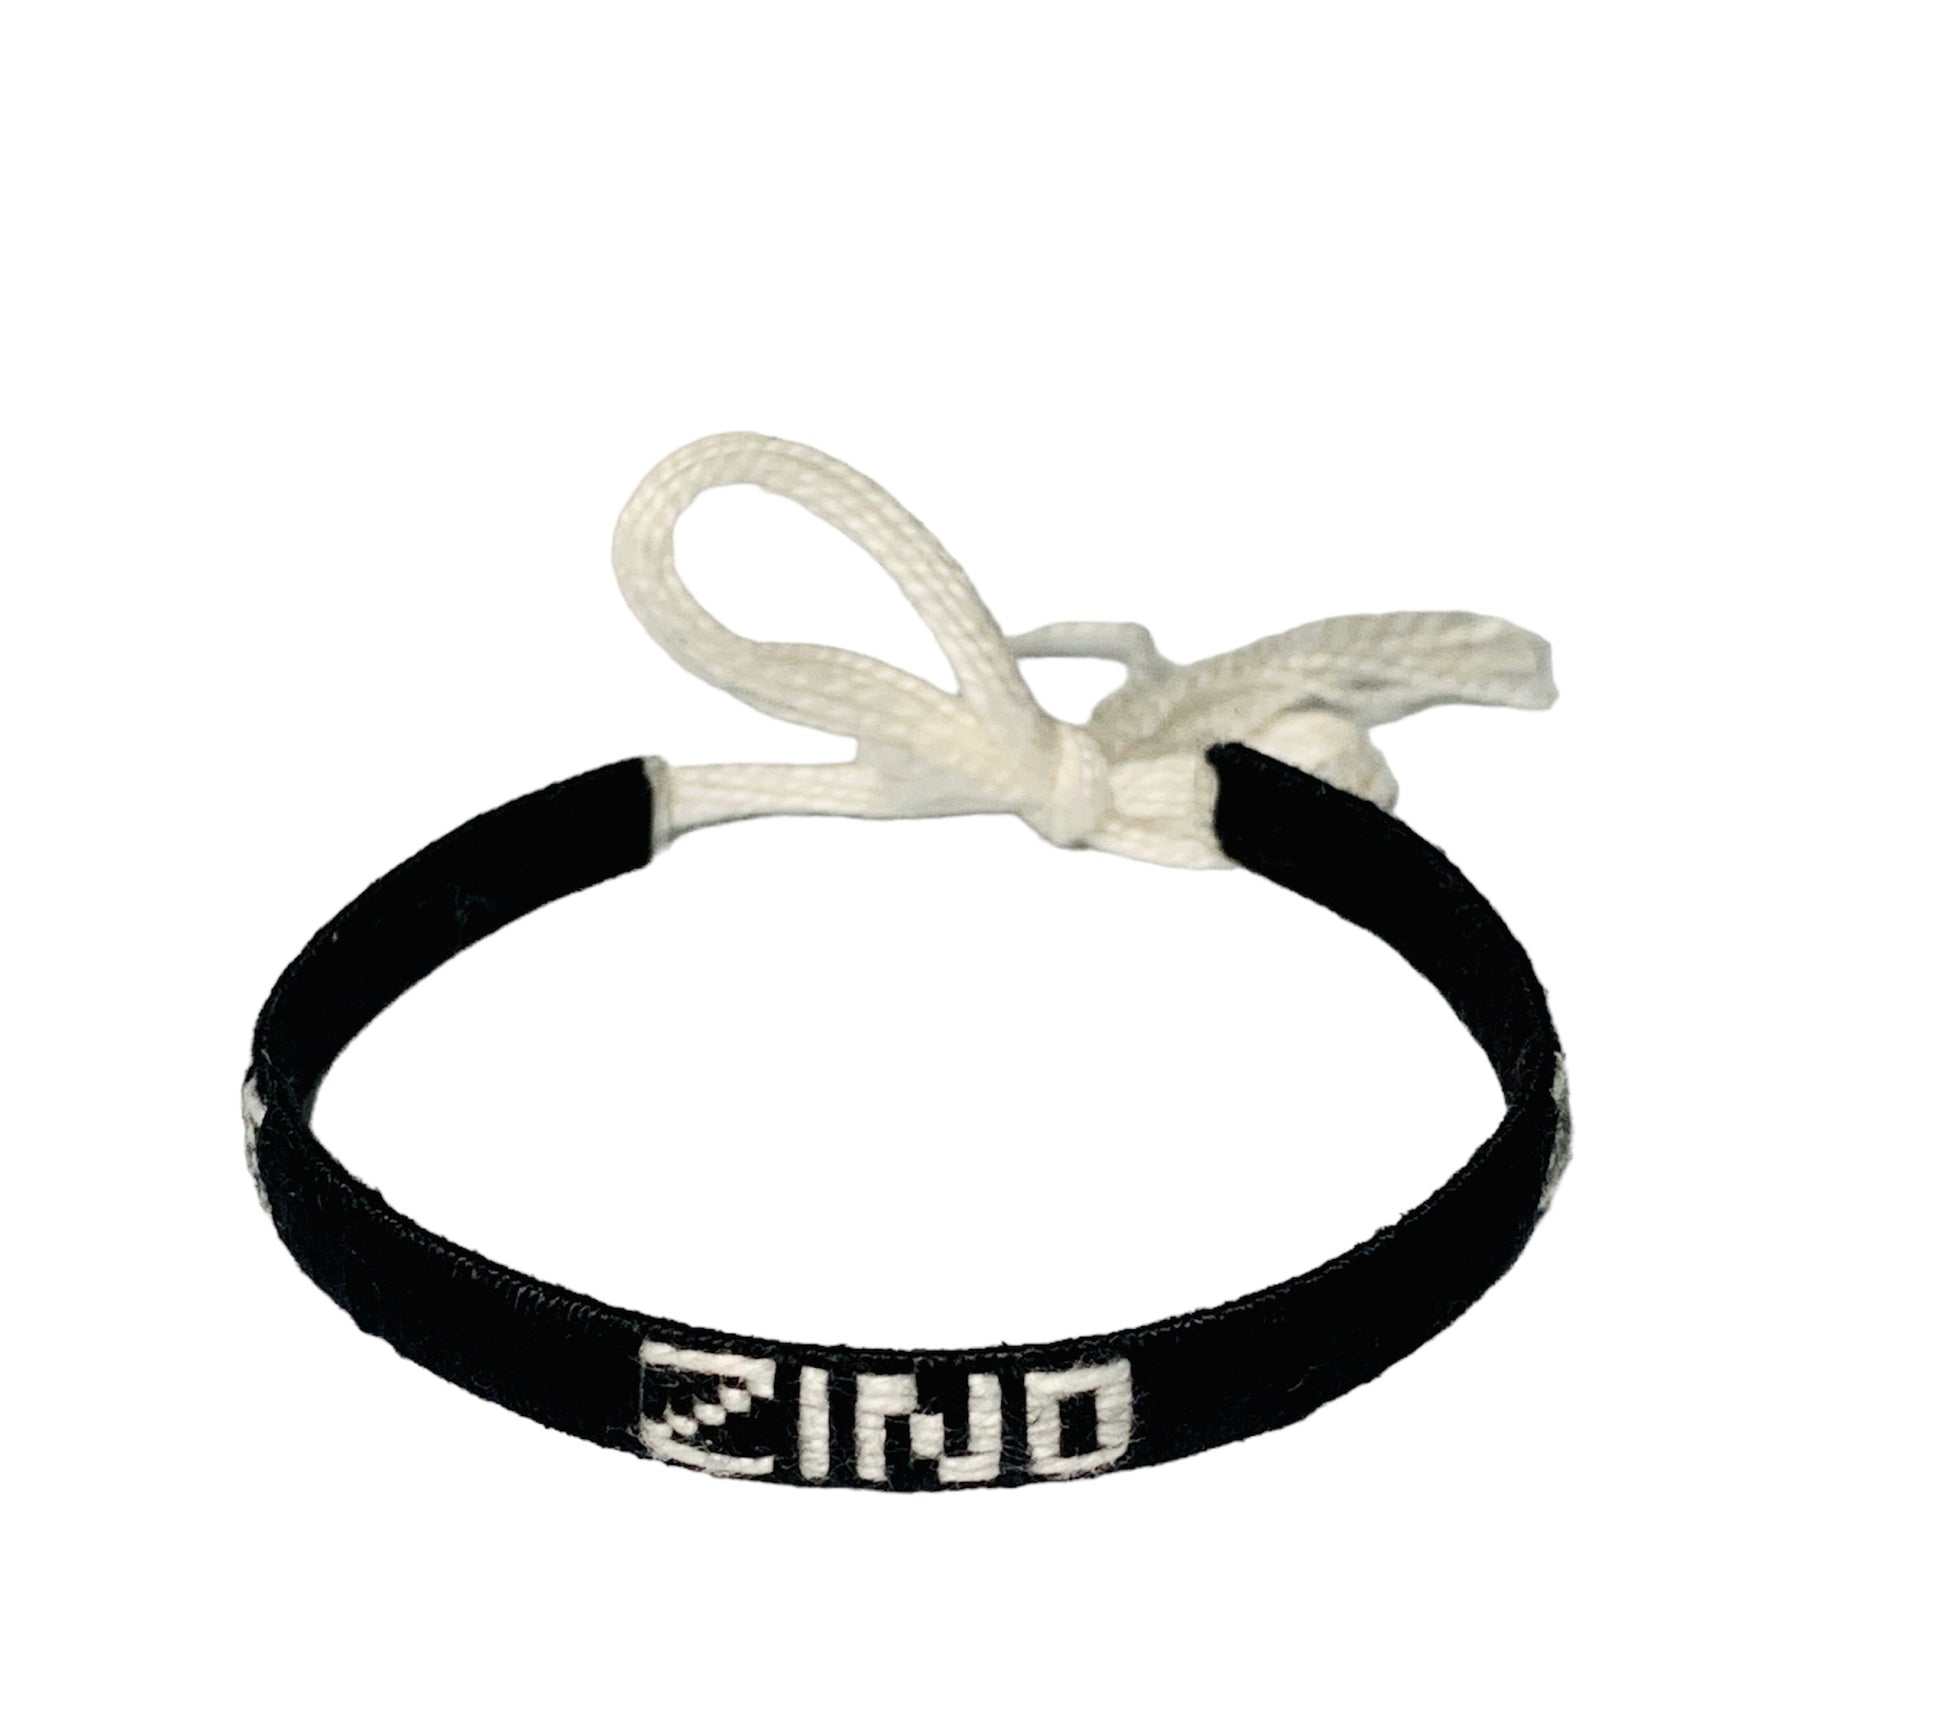 Bracelet ZINO fait main travaillé avec des fils de coton. Fermeture par nœud. Fabrication artisanale en fil de coton.